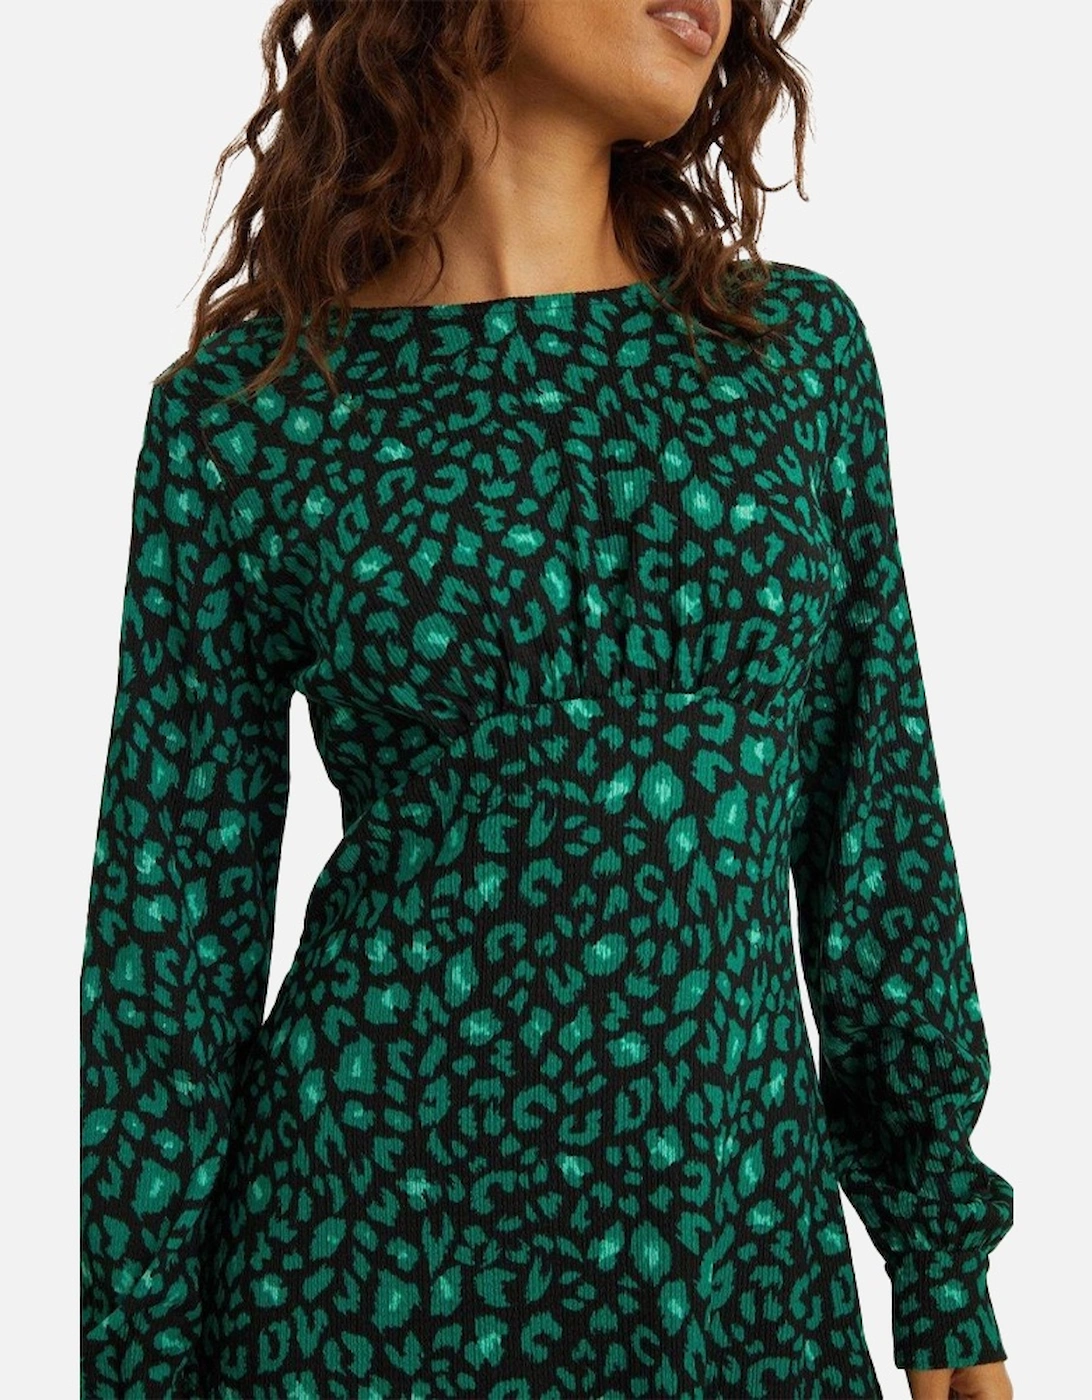 Womens/Ladies Leopard Print Frill Hem Petite Mini Dress